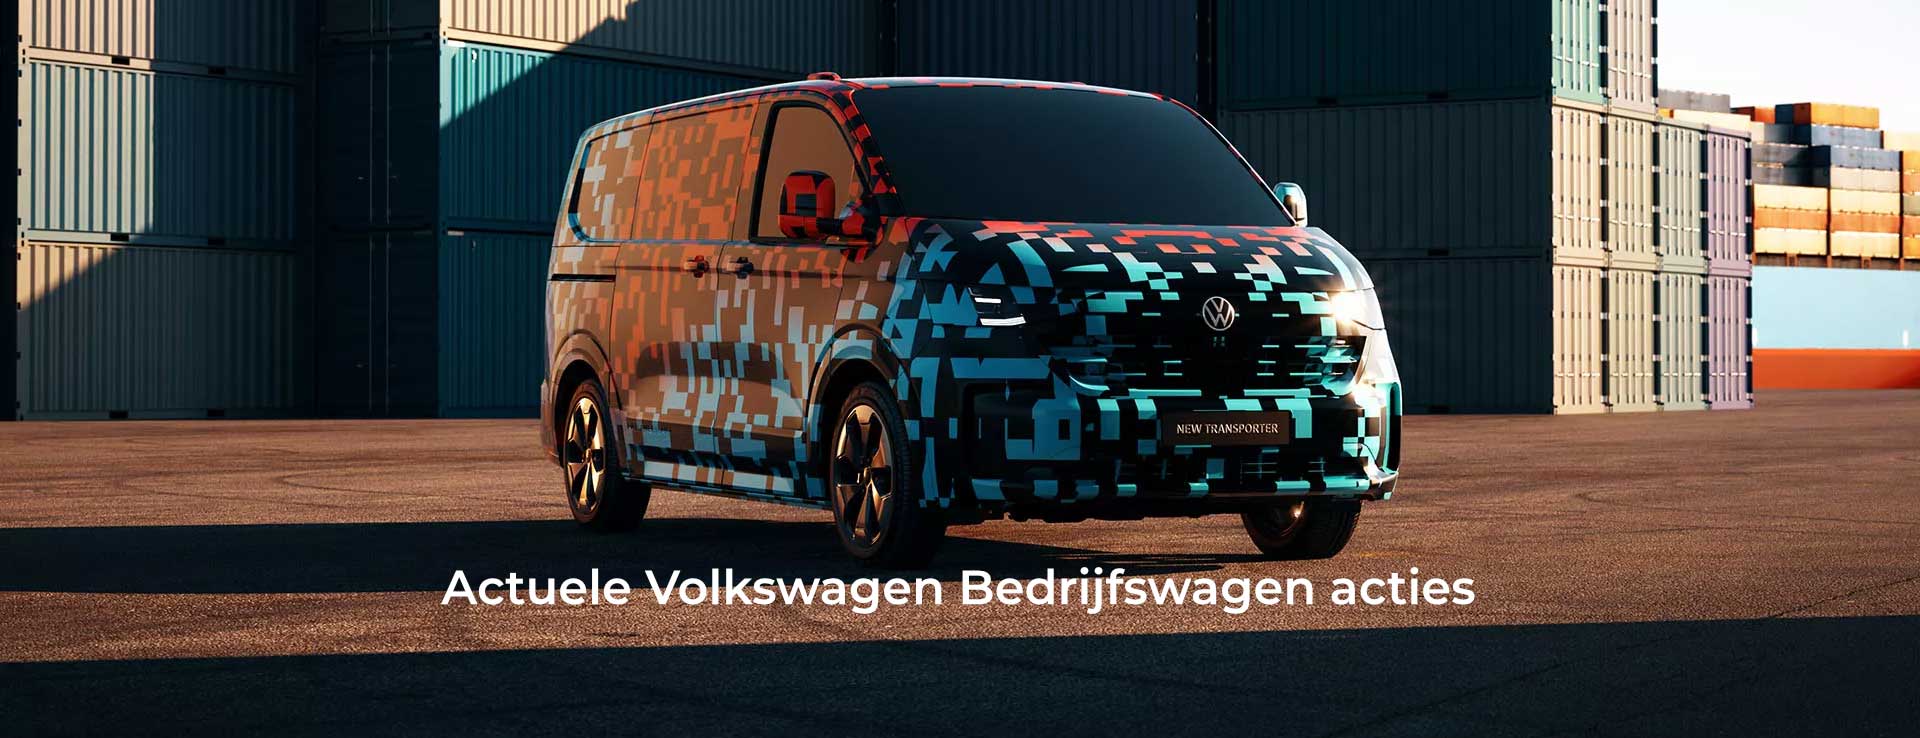 Nieuwe Volkswagen Transporter Teaser Header 5